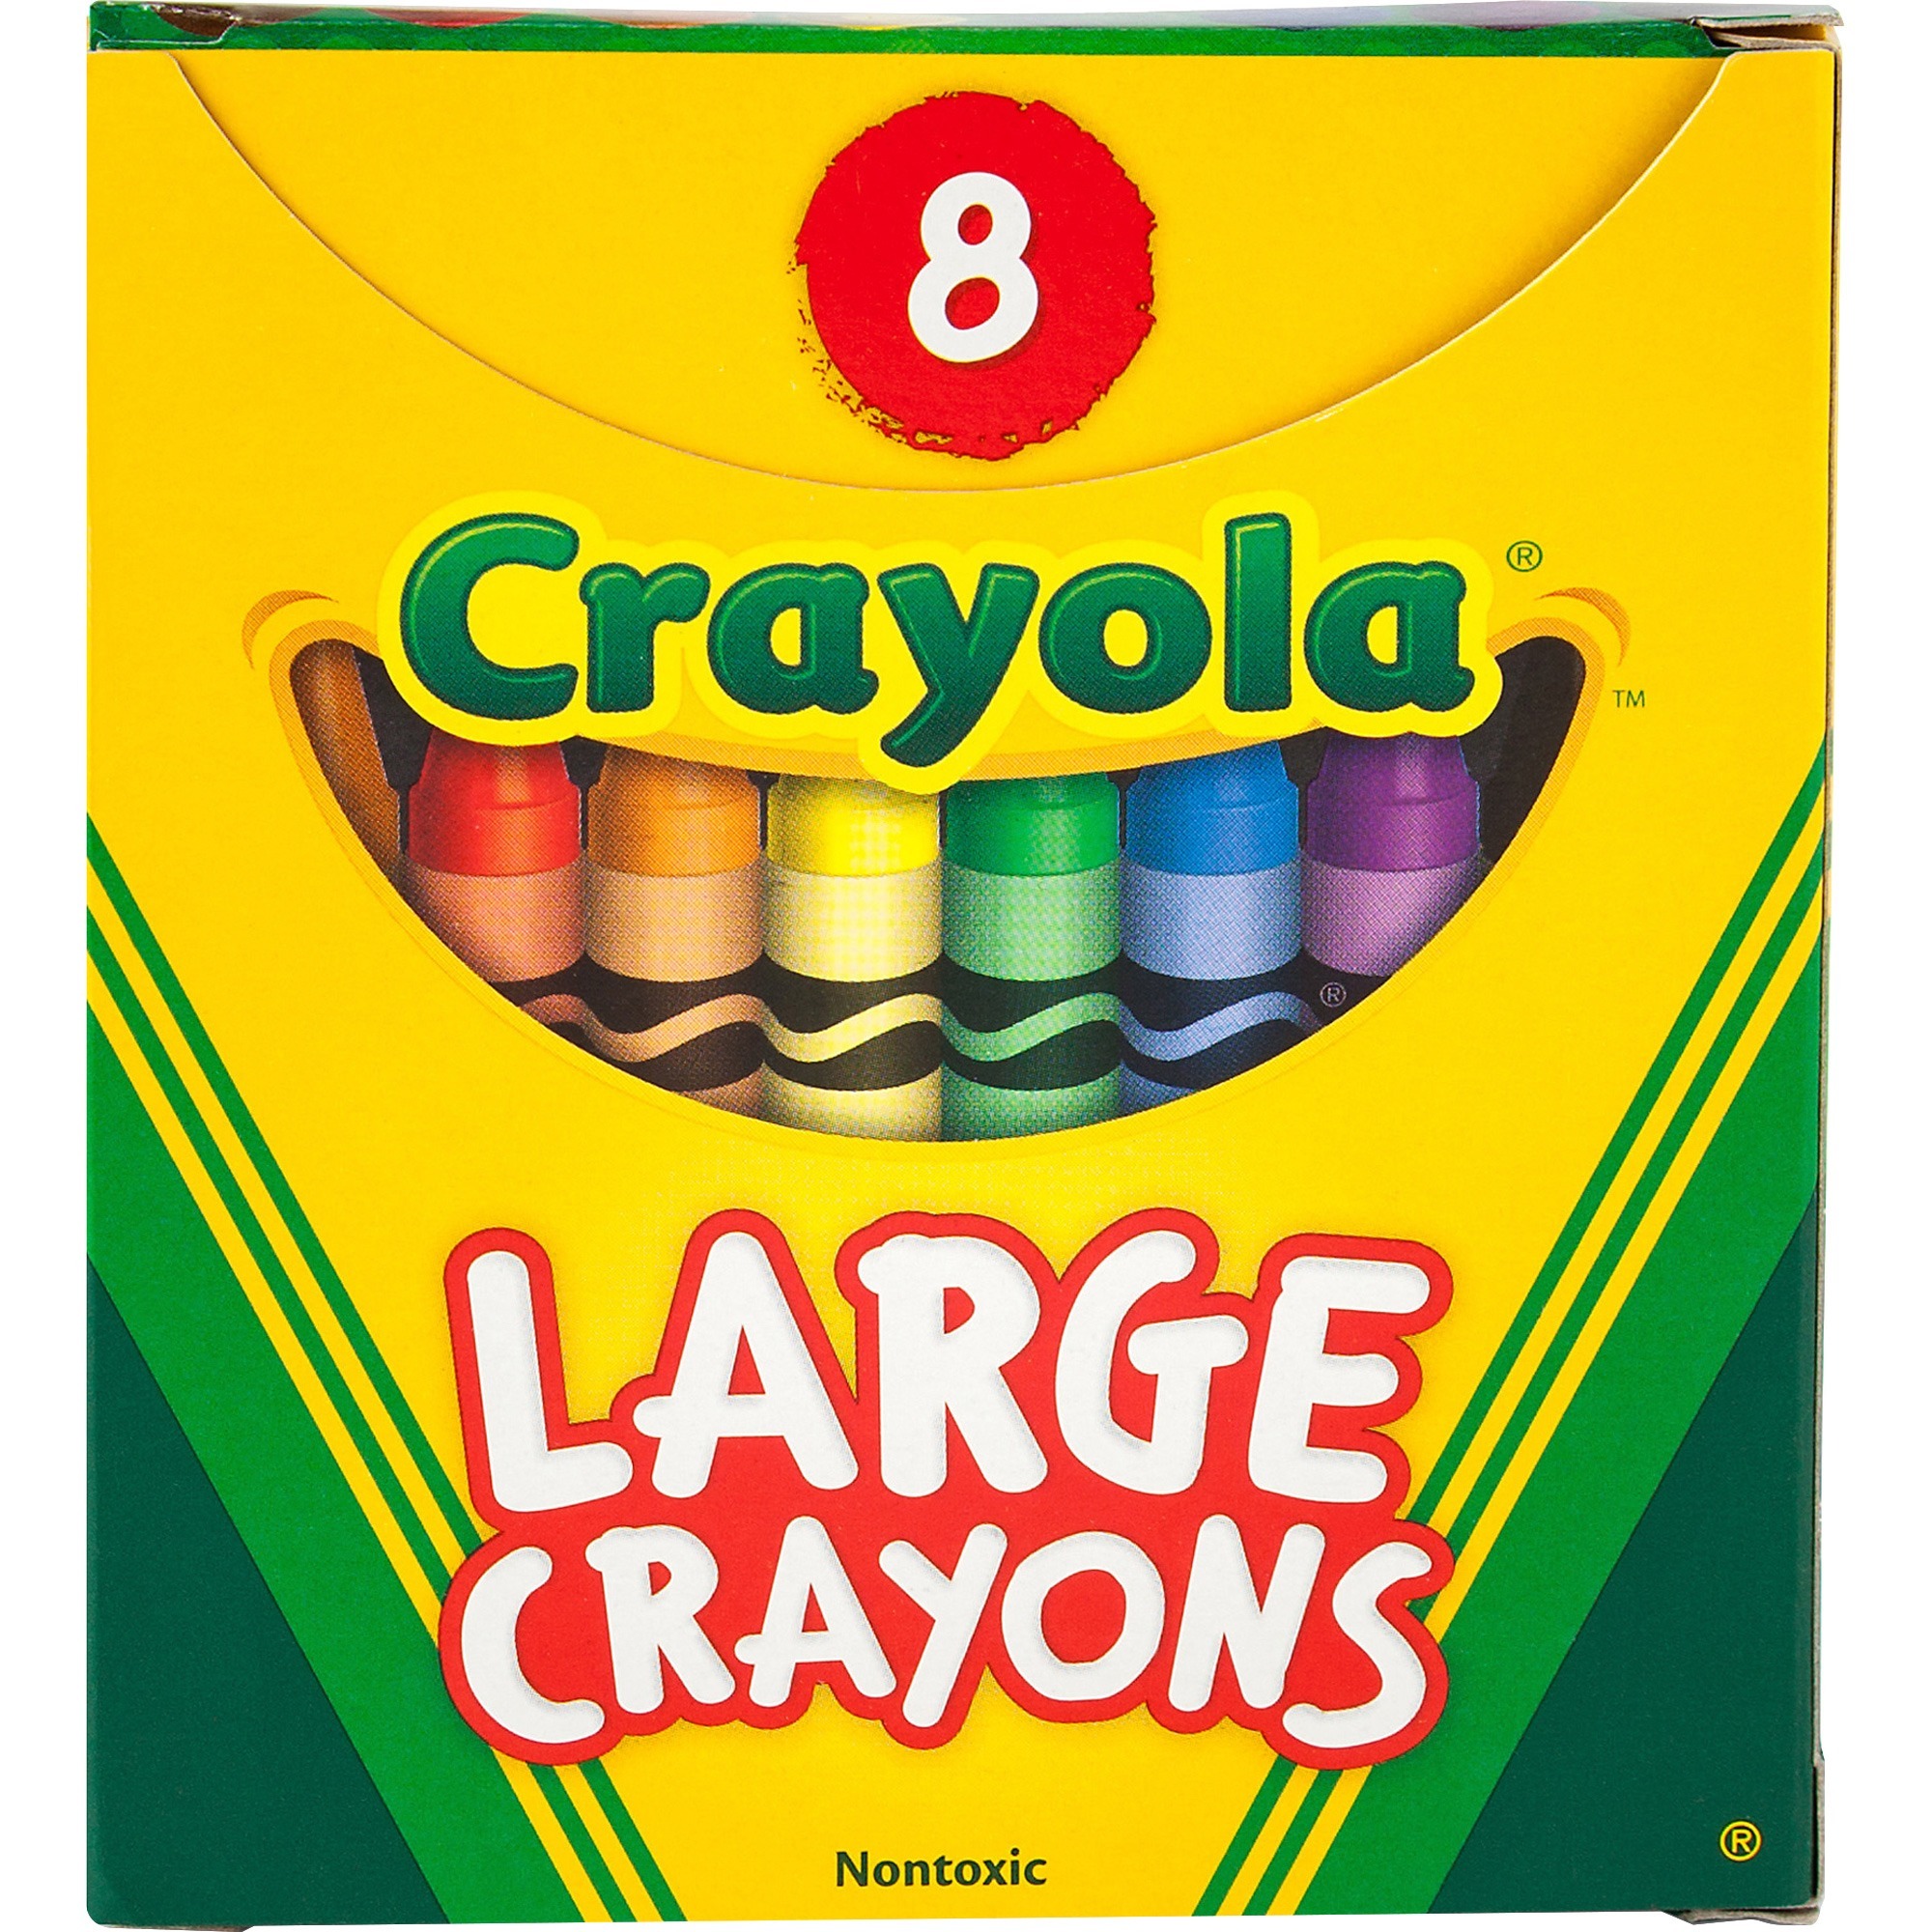 Crayola Kid's First Washable Crayon - Assorted Wax - 8